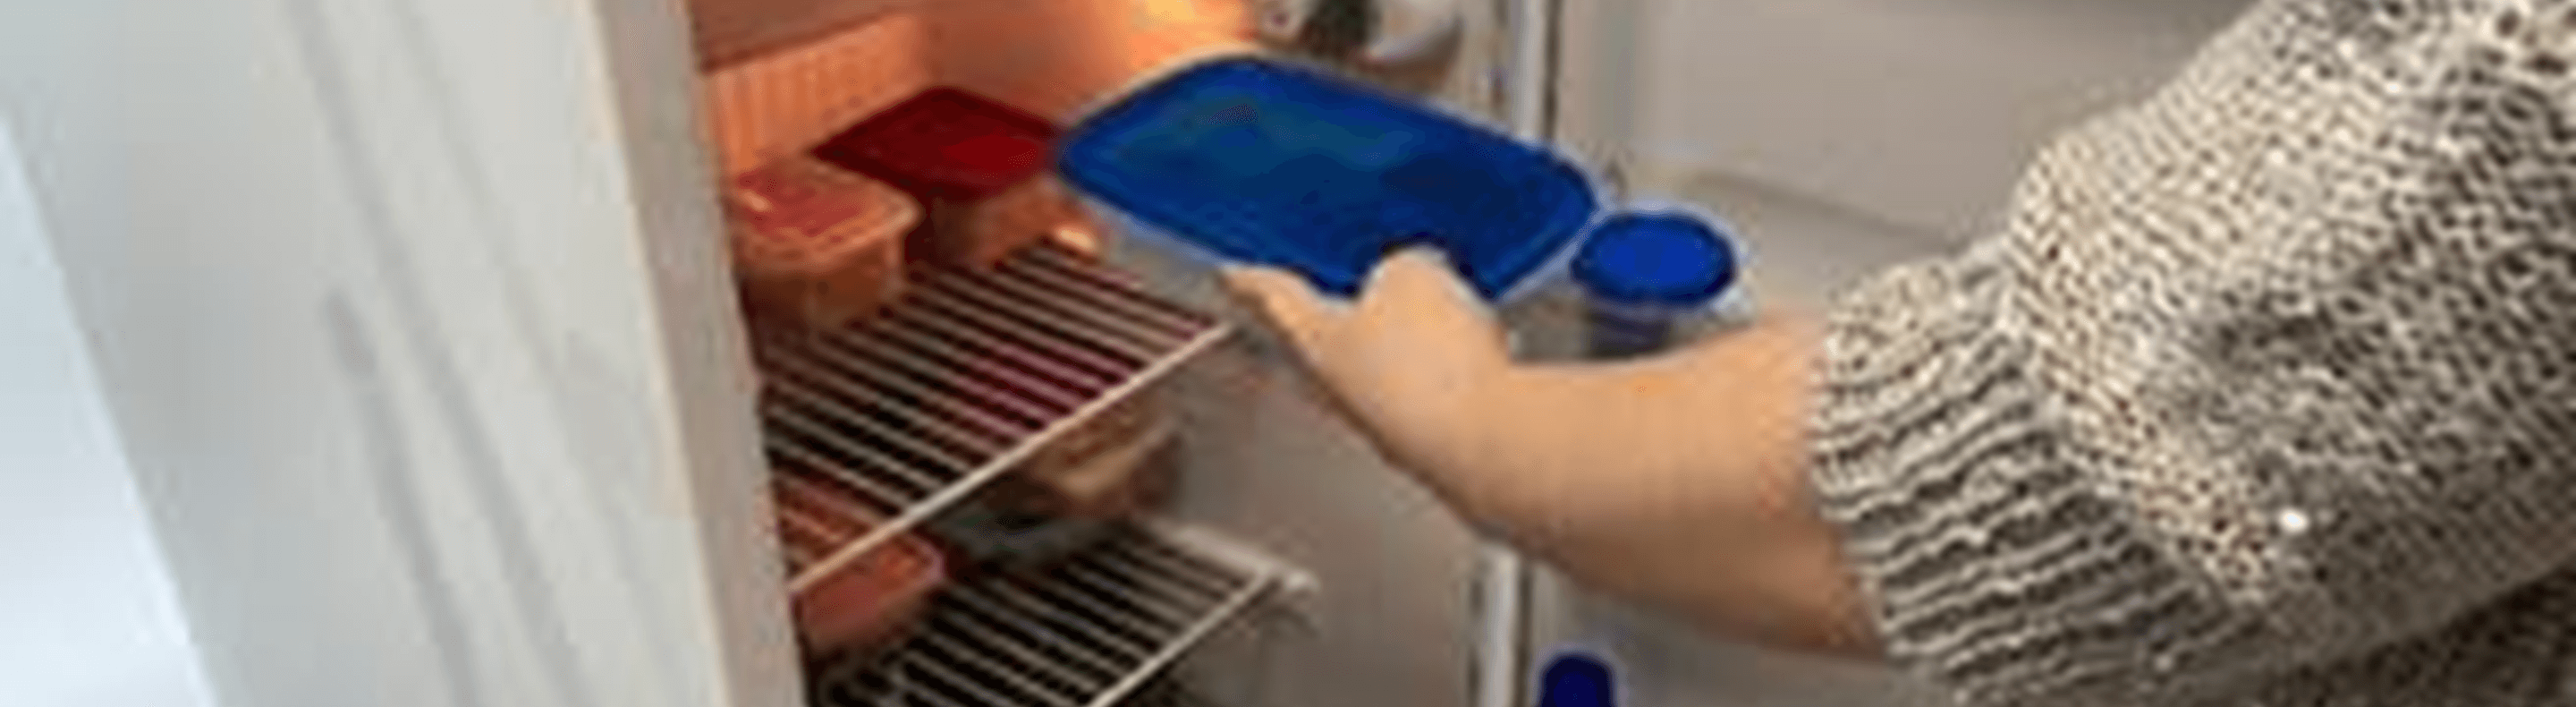 Uma pessoa colocando um pote na geladeira